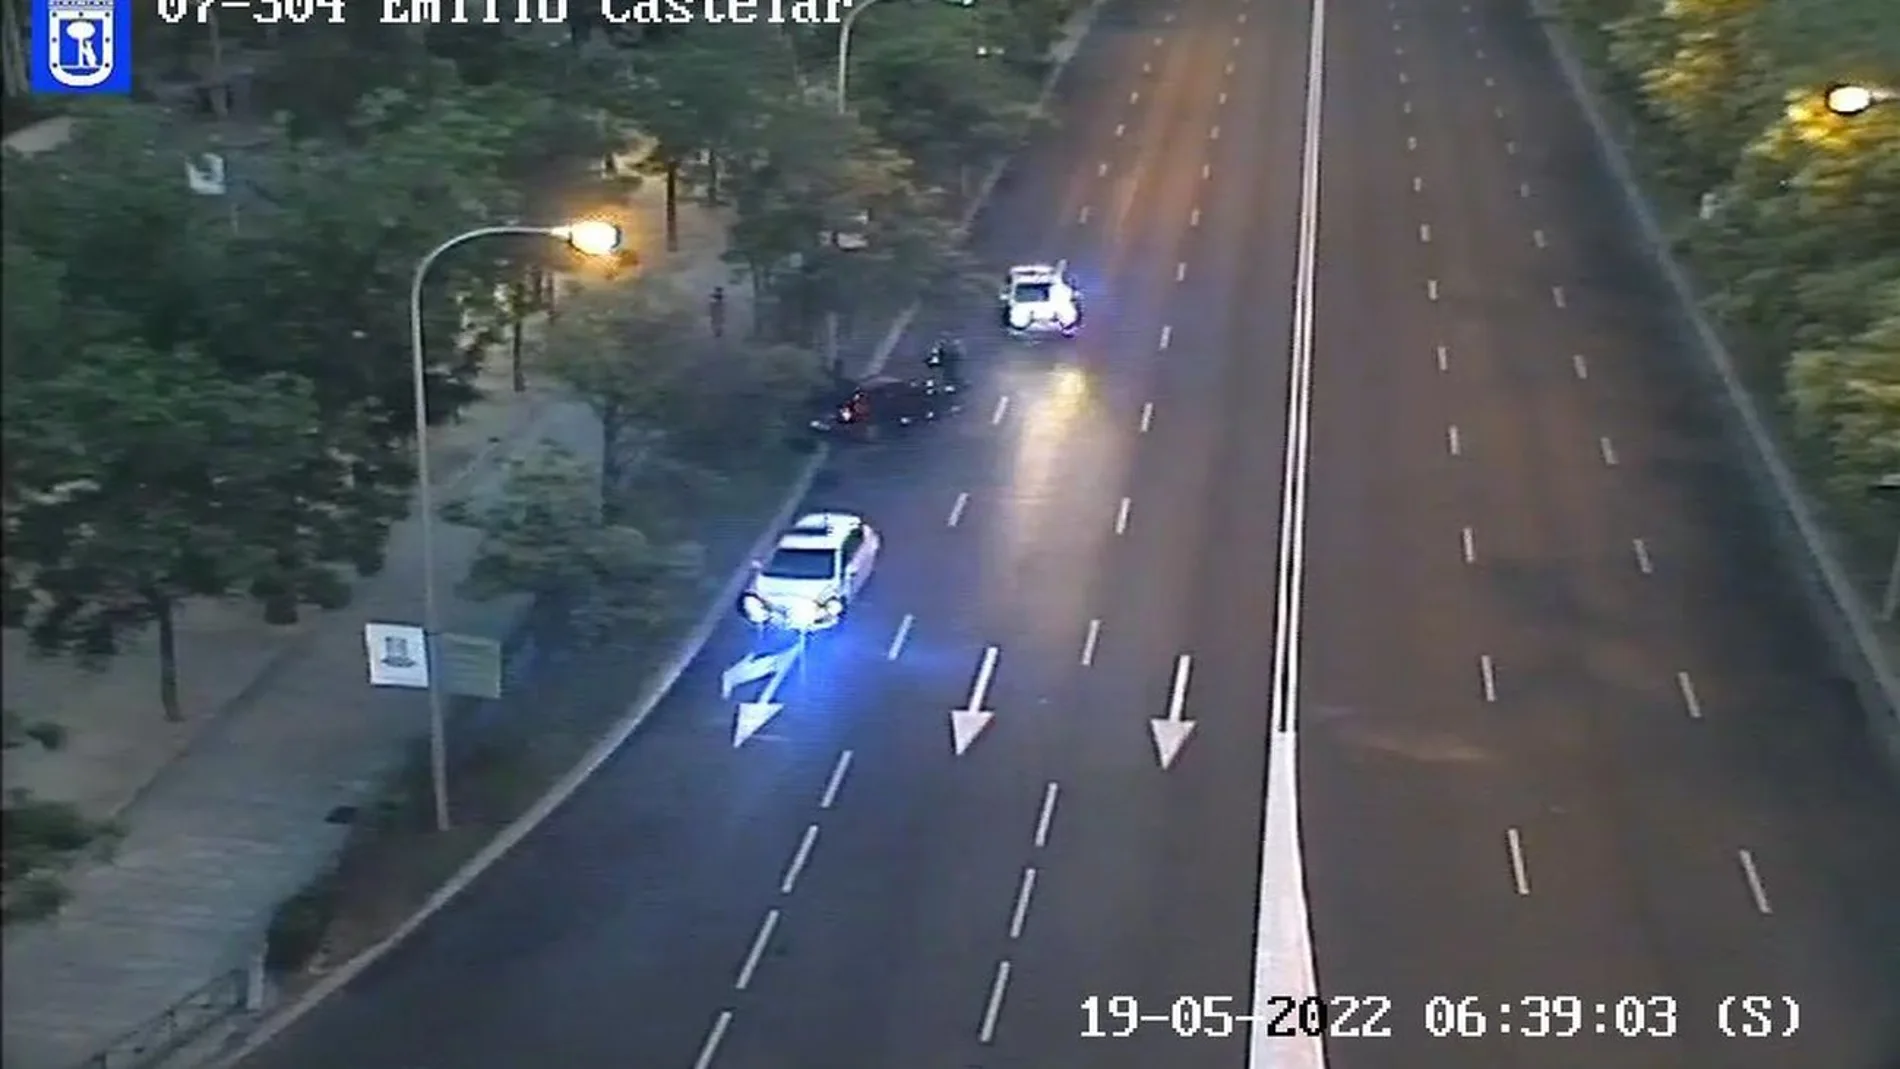 Incidencia de tráfico en la Castellana